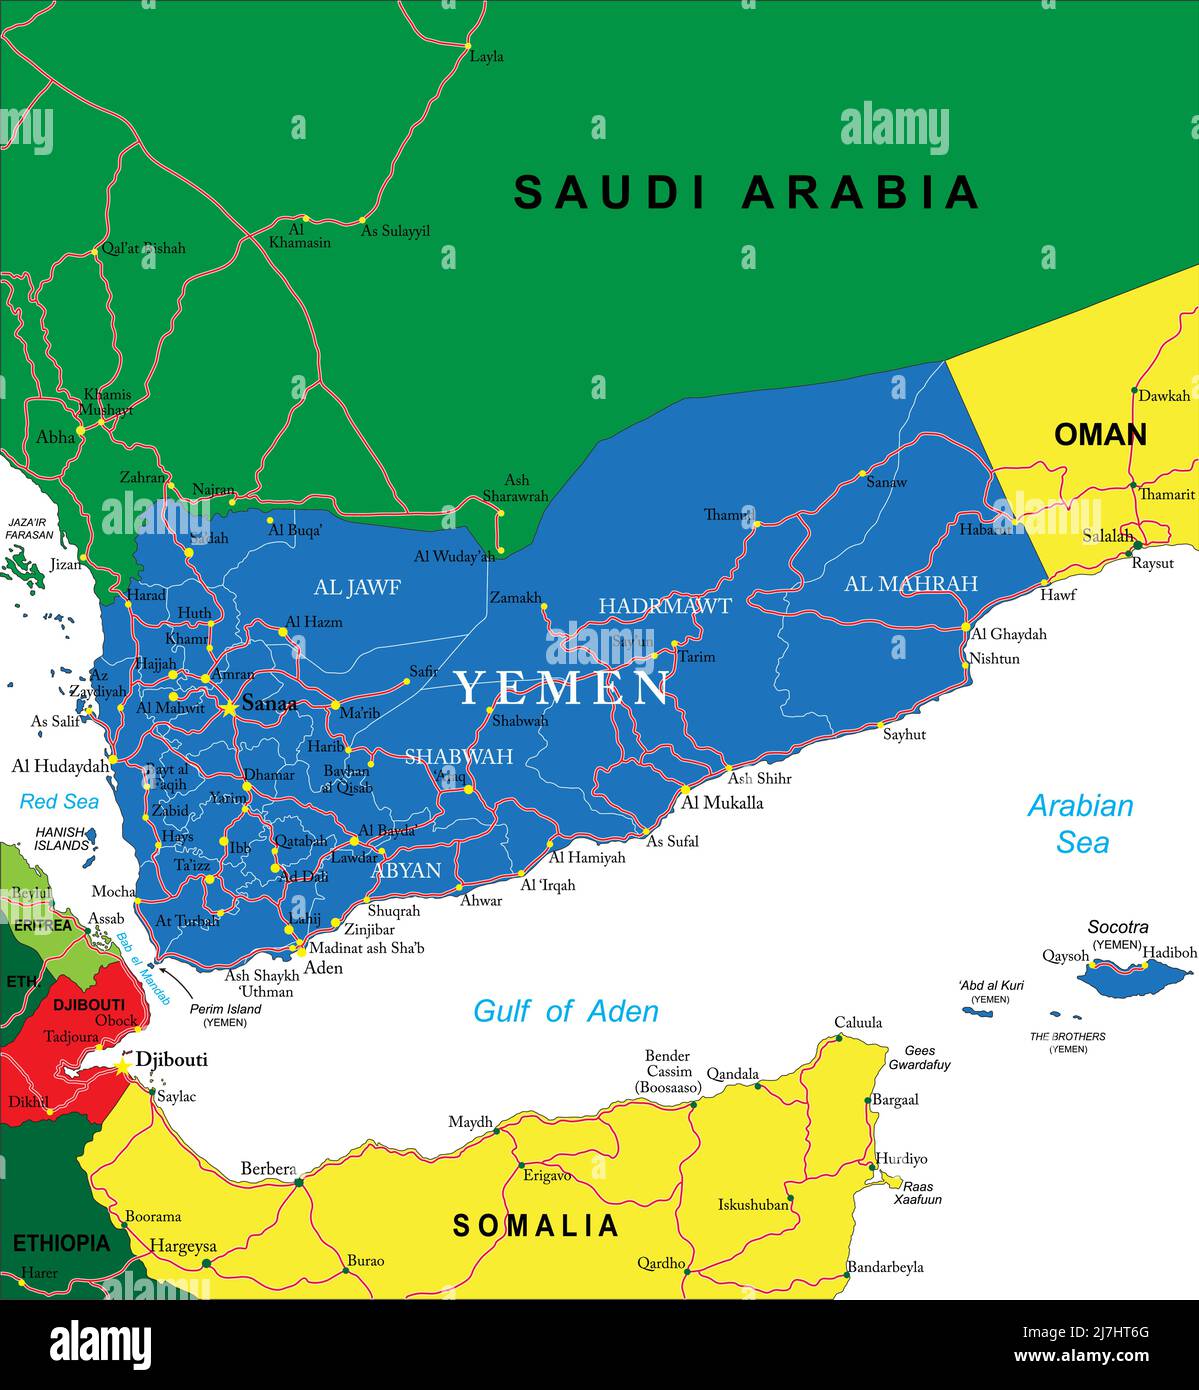 Hochdetaillierte Vektorkarte von Jemen mit Verwaltungsregionen, Hauptstädten und Straßen. Stock Vektor